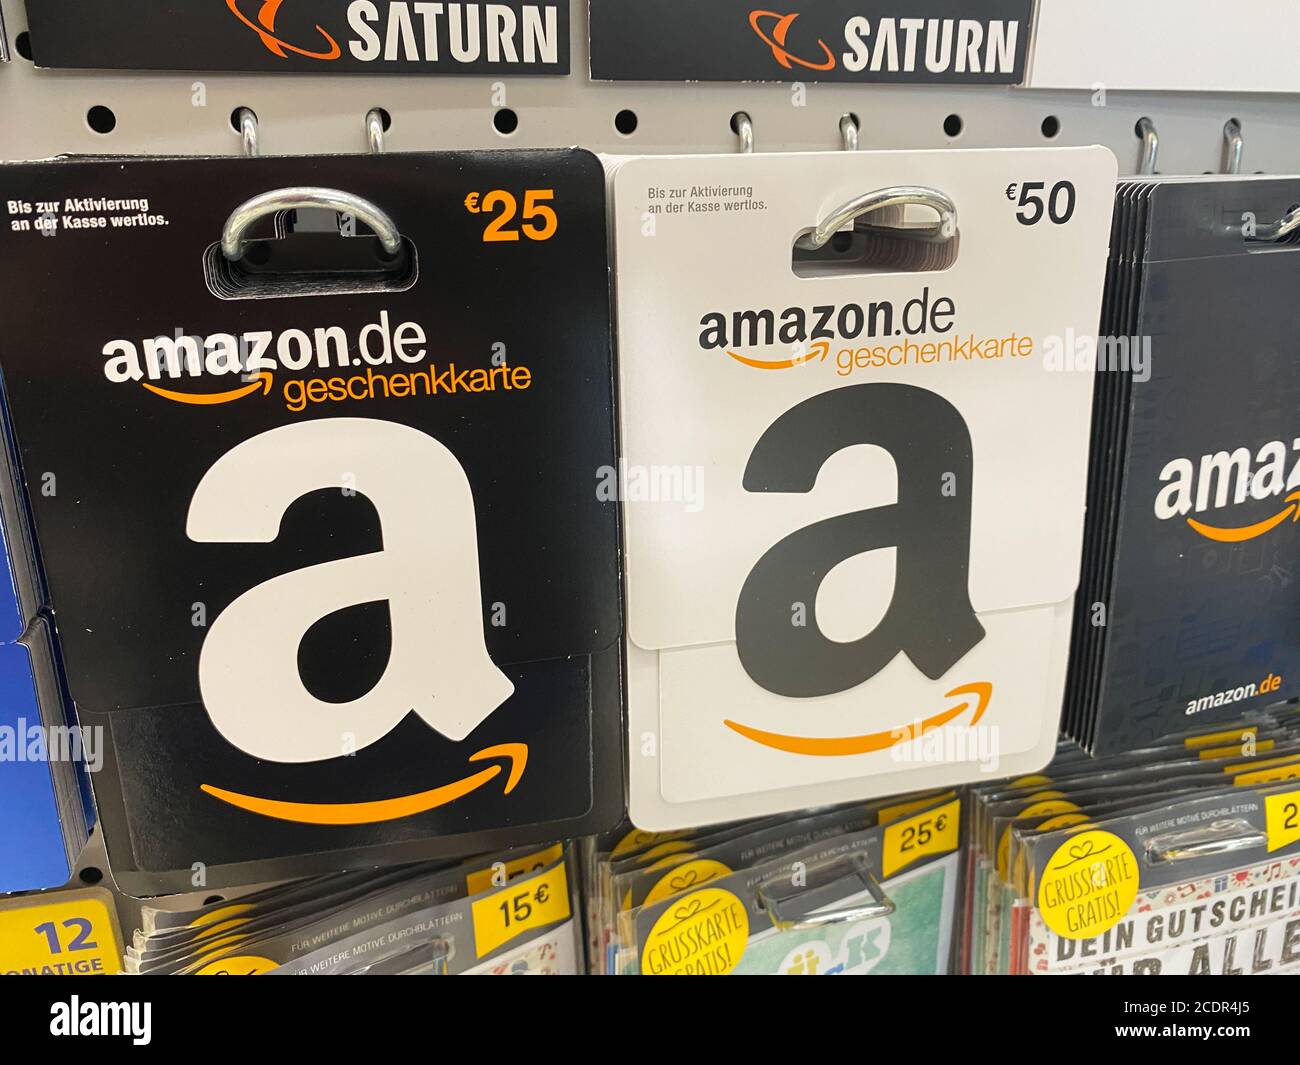 Amazon gift voucher -Fotos und -Bildmaterial in hoher Auflösung – Alamy